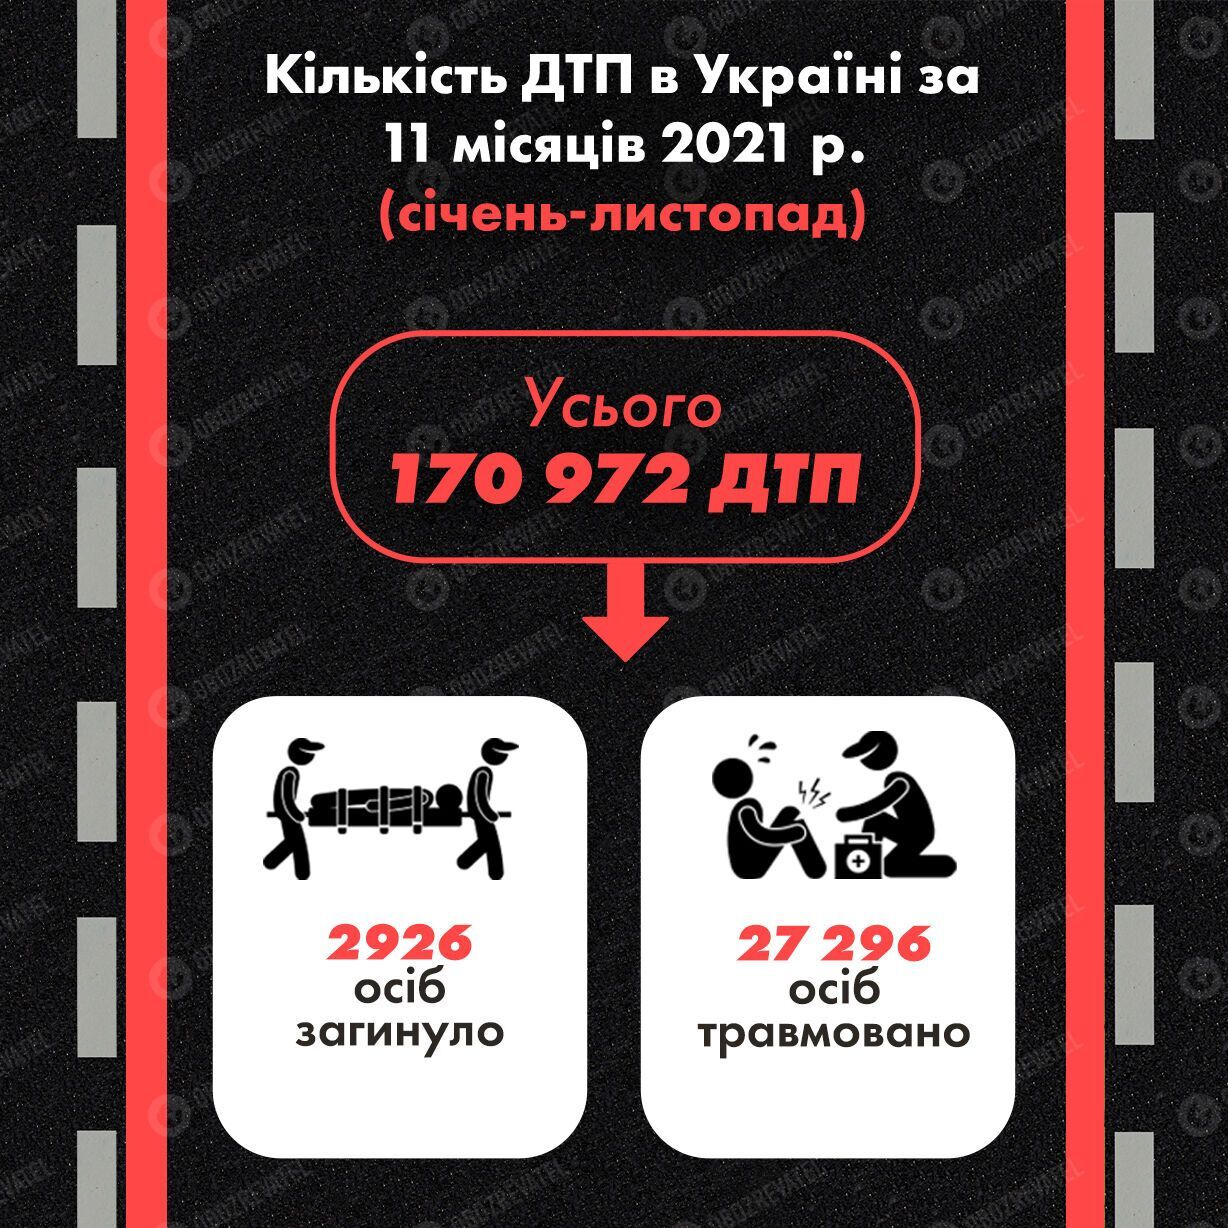 Статистика ДТП в Україні за 11 місяців 2021 року